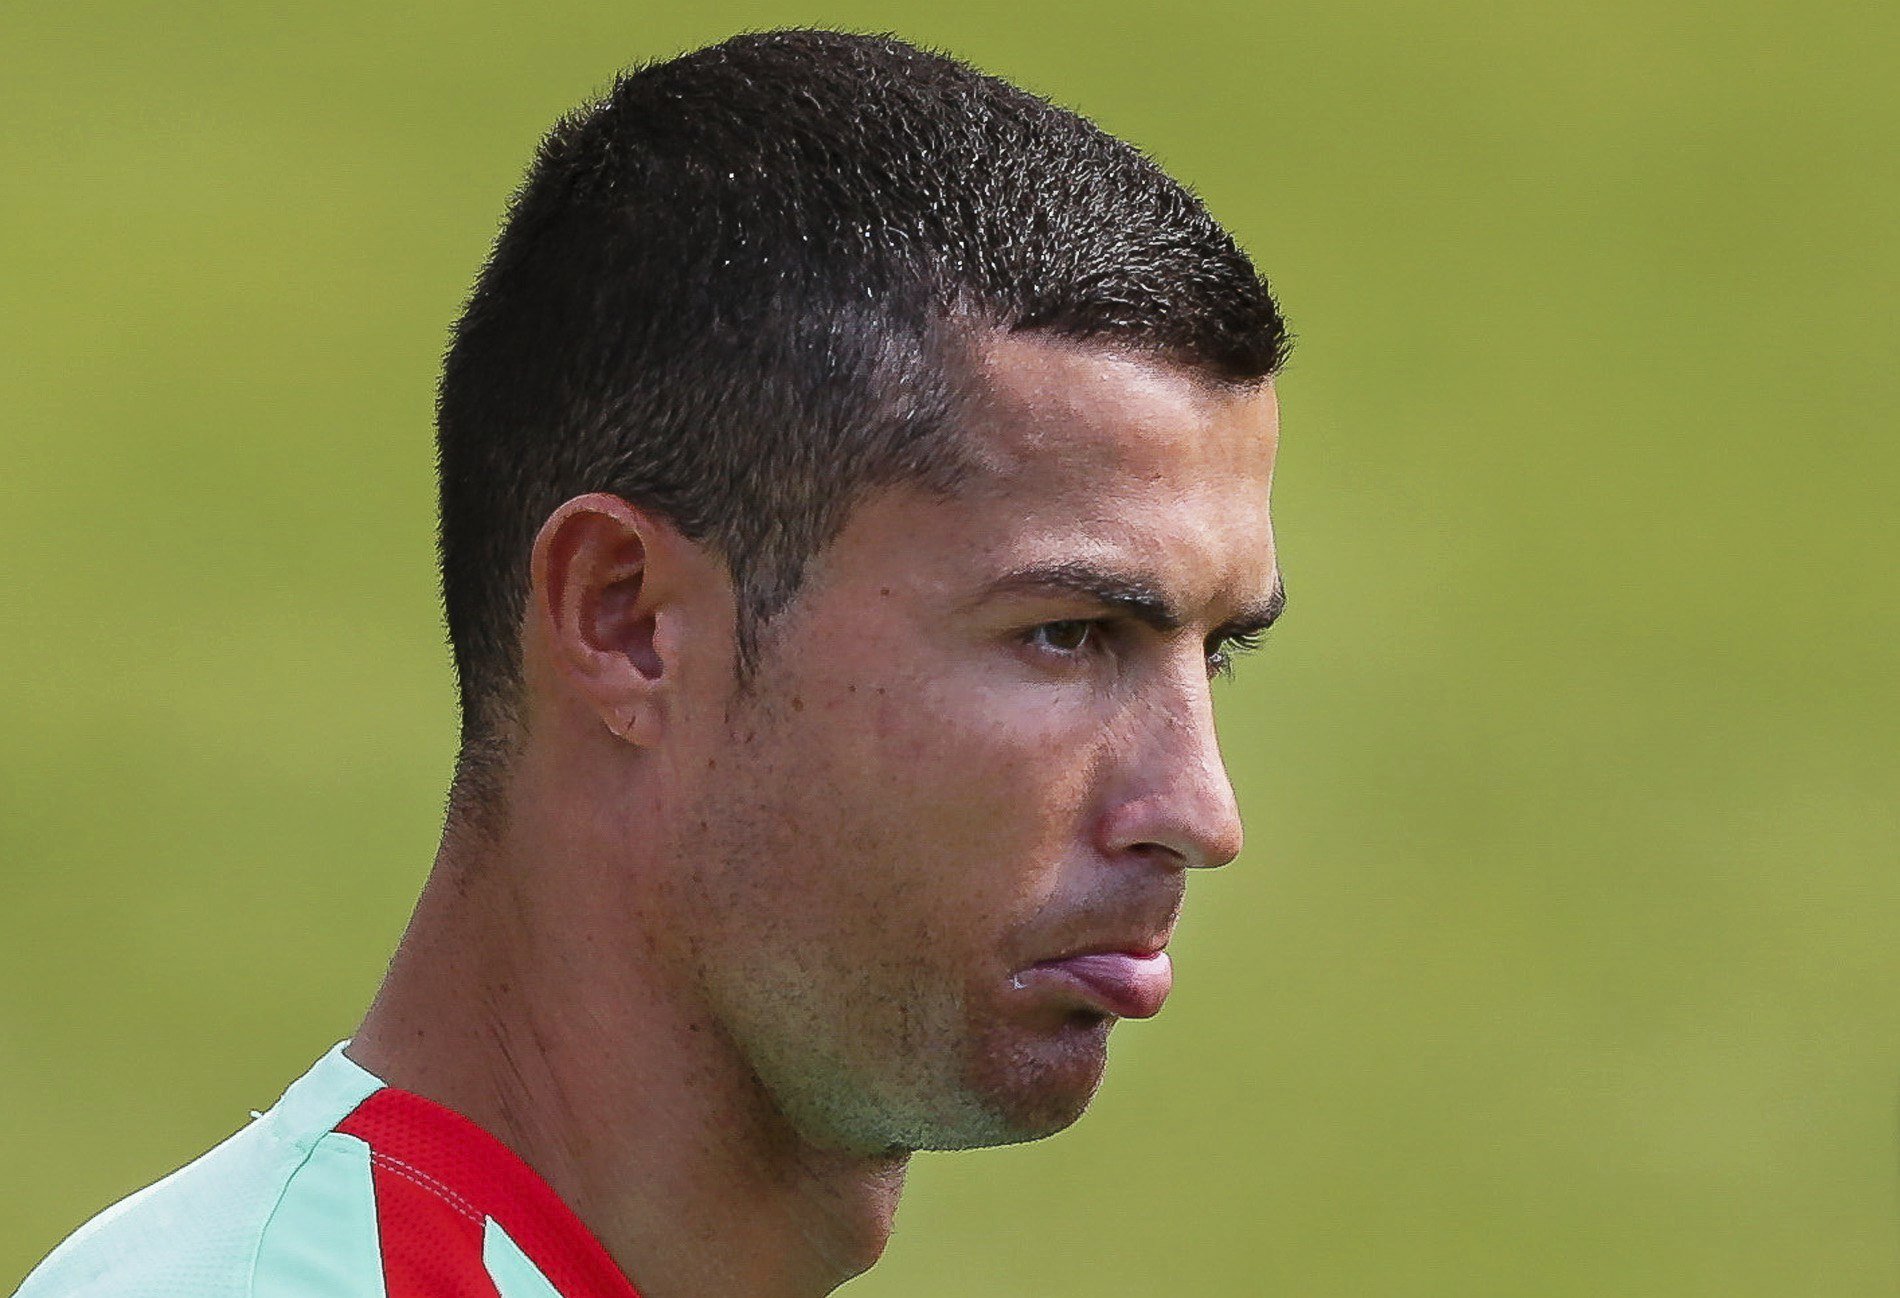 Cristiano Ronaldo podría acabar en prisión, según técnicos de Hacienda